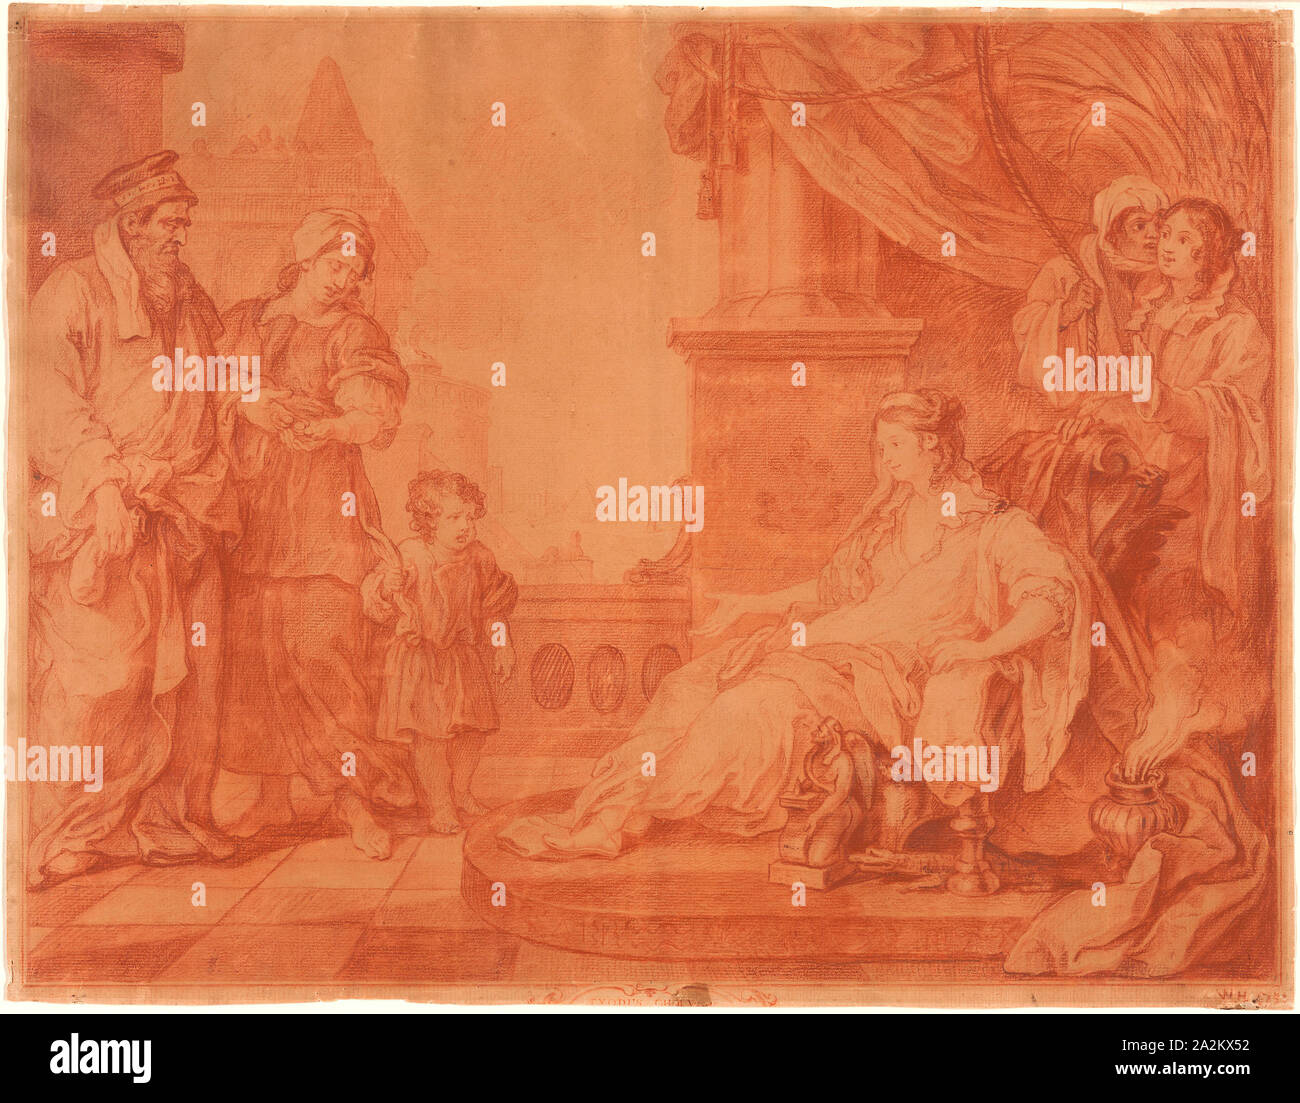 Moïse a apporté à la fille de Pharaon, 1751, William Hogarth, anglais, 1697-1764, l'Angleterre, divers craies rouge (un oxyde en noir) sur papier vergé crème, 406 × 525 mm Banque D'Images